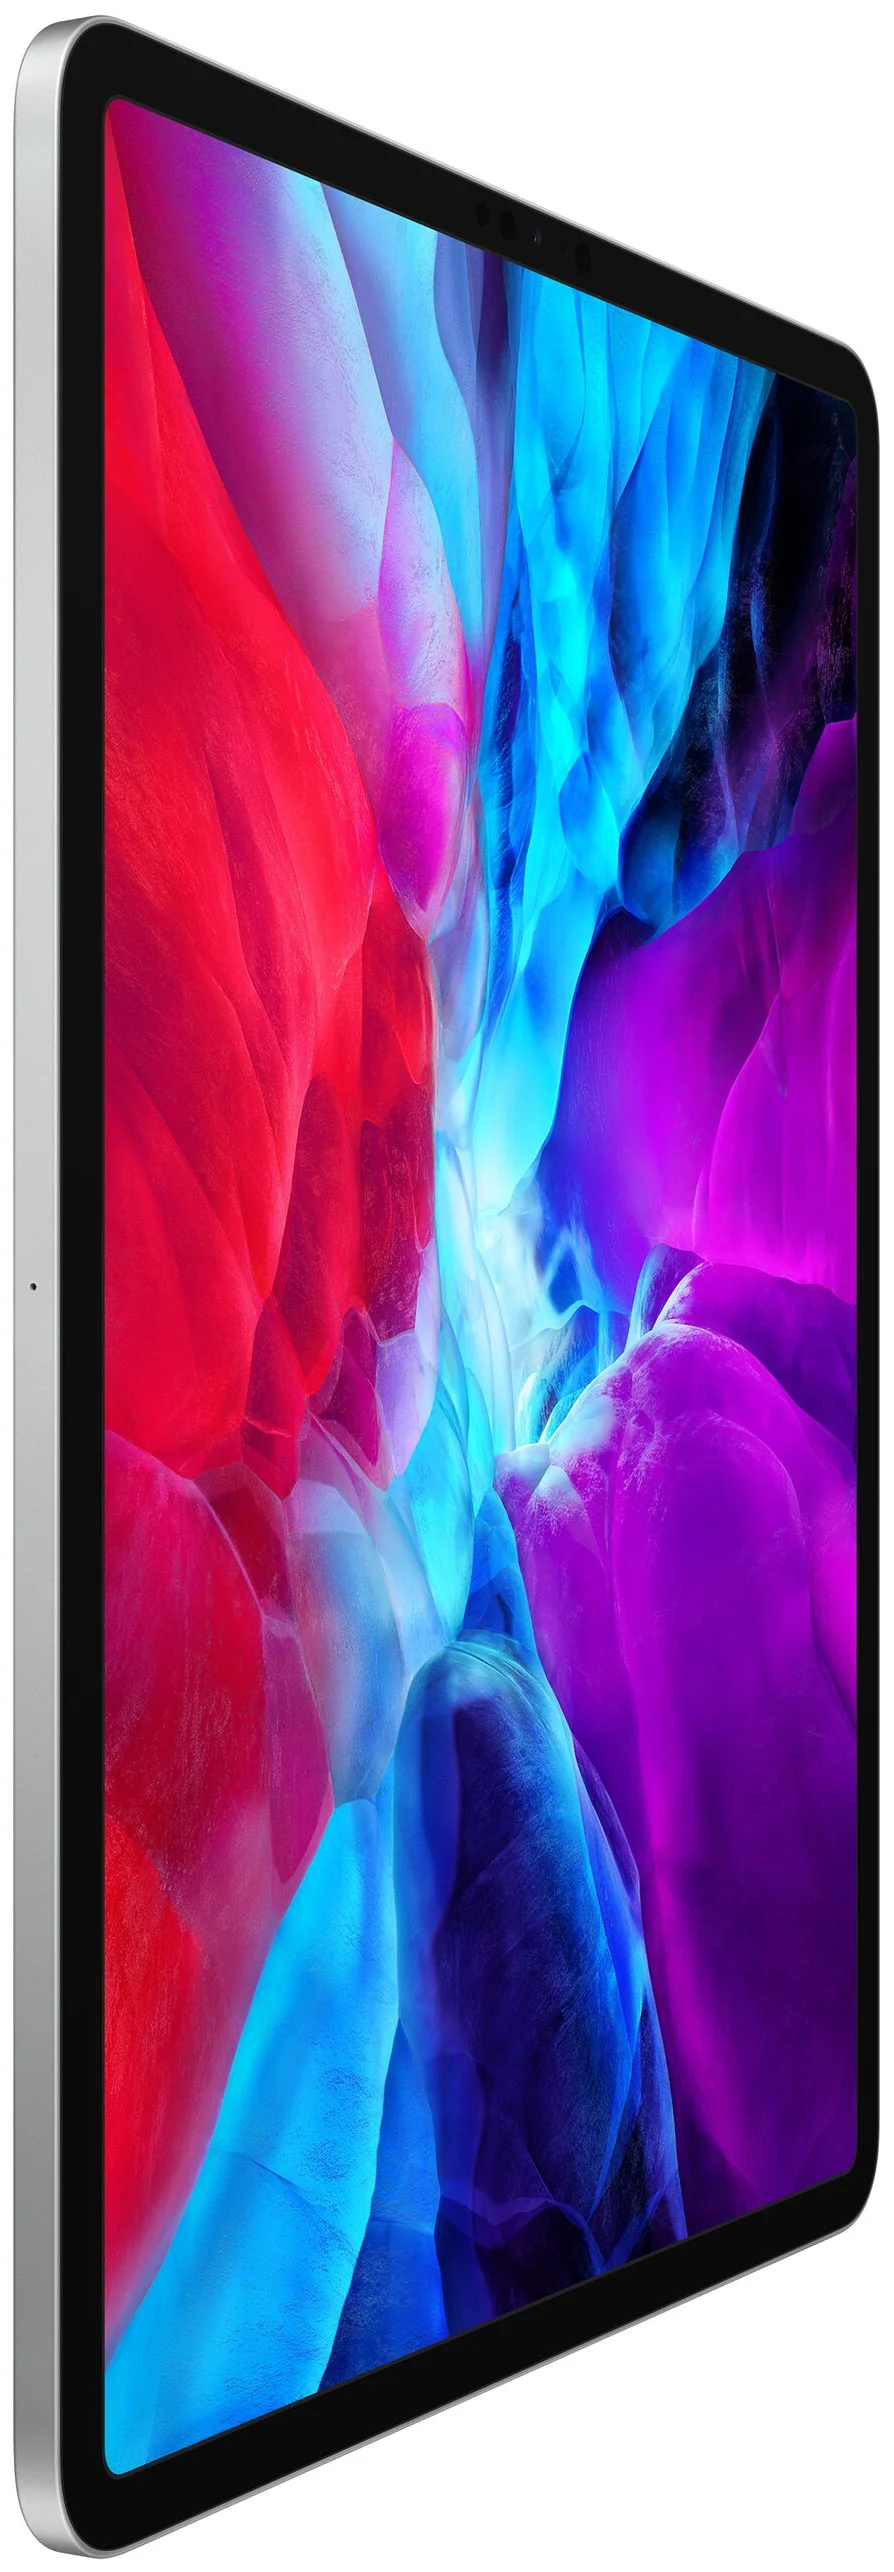 Apple iPad Pro 12.9 (2020) 512Gb Wi-Fi + Cellular - оперативная память: 6 ГБ